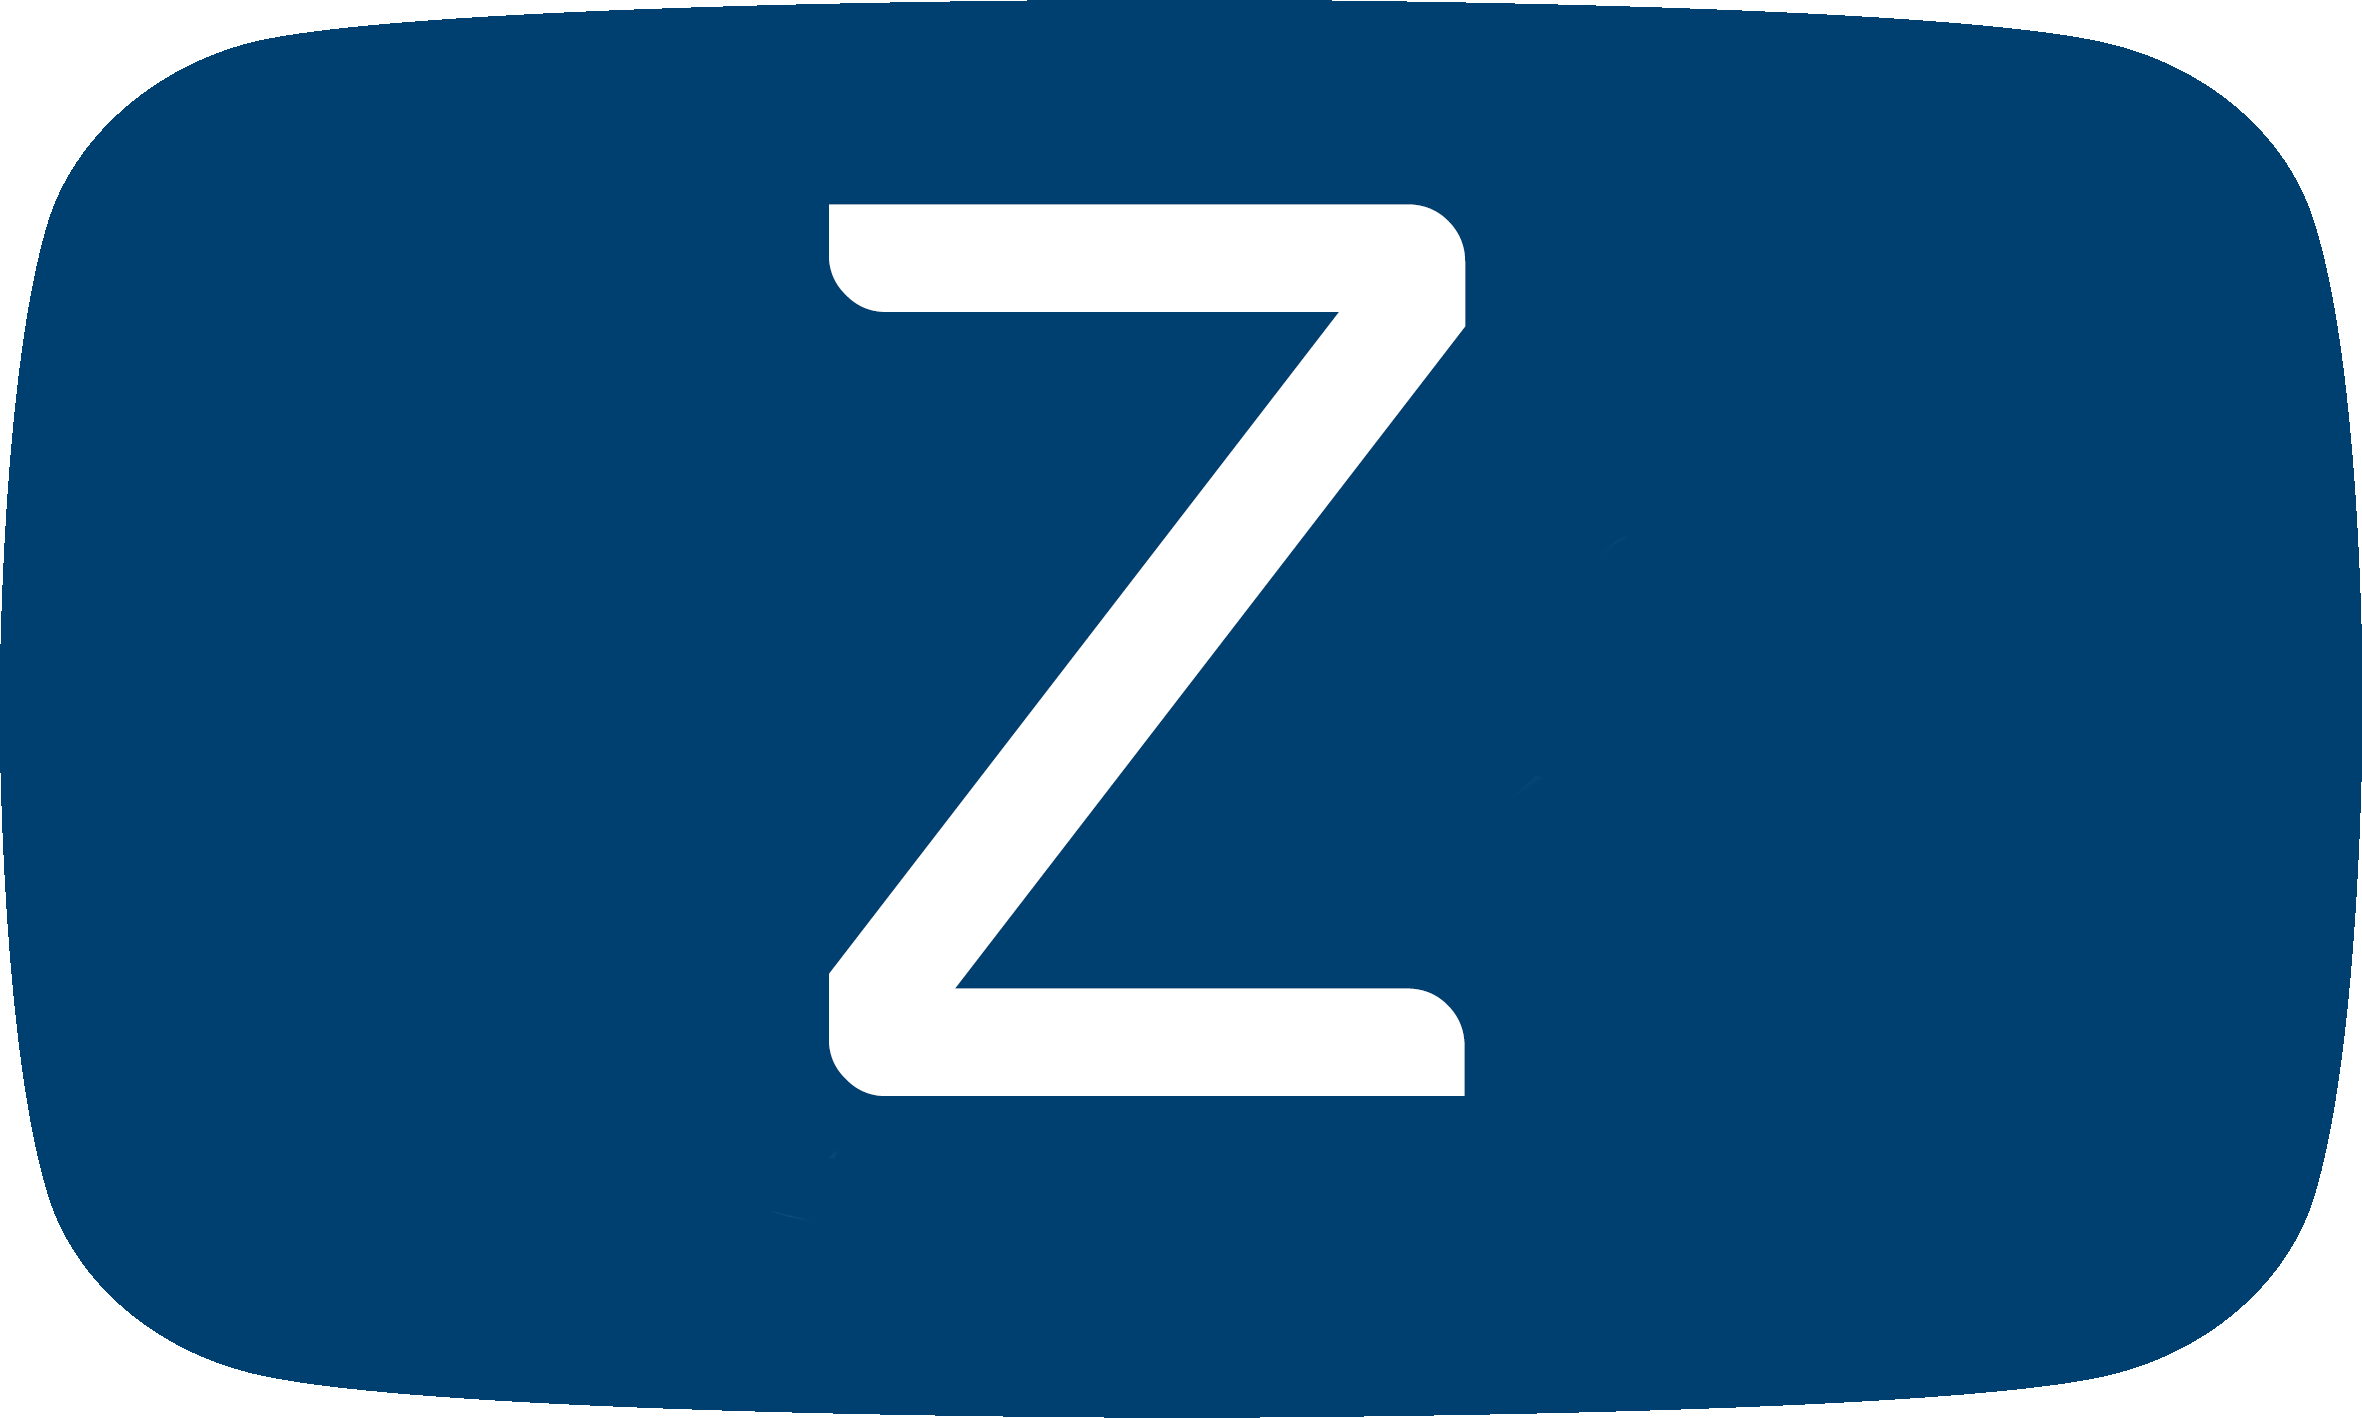 Letra Z